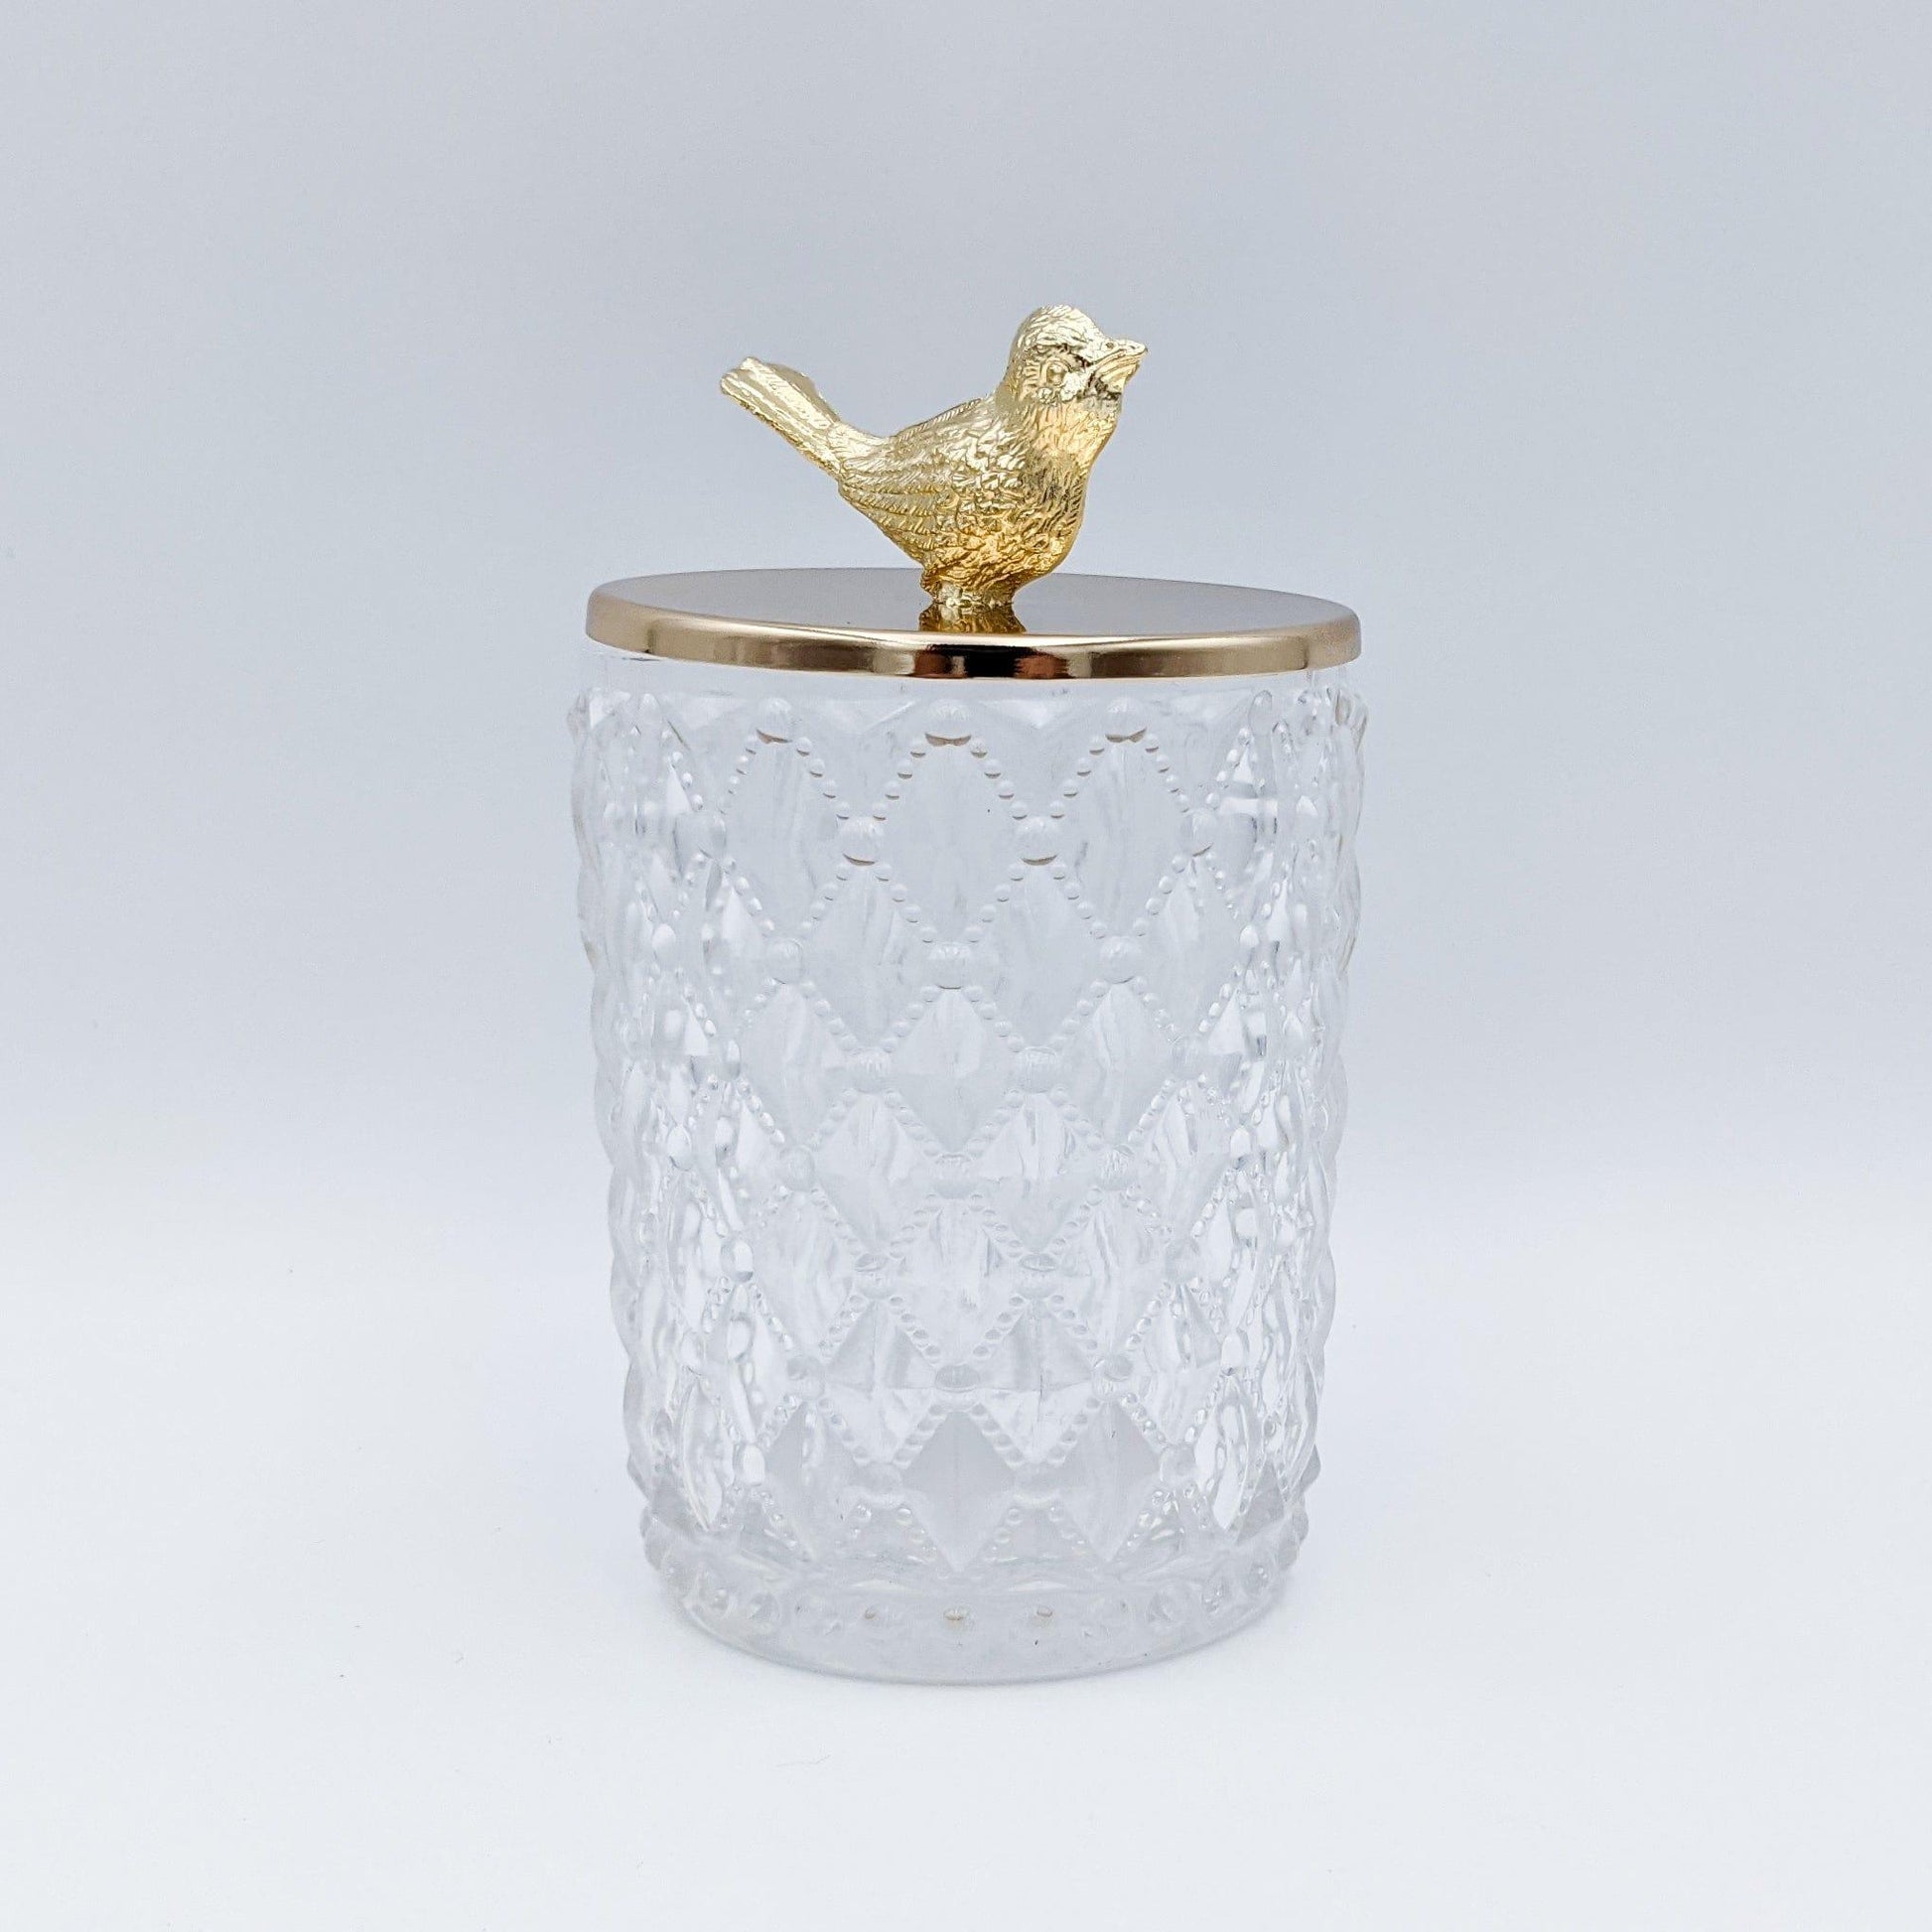 House Journey Jar Large 17cm Gold Bird Diamond Glass Jar